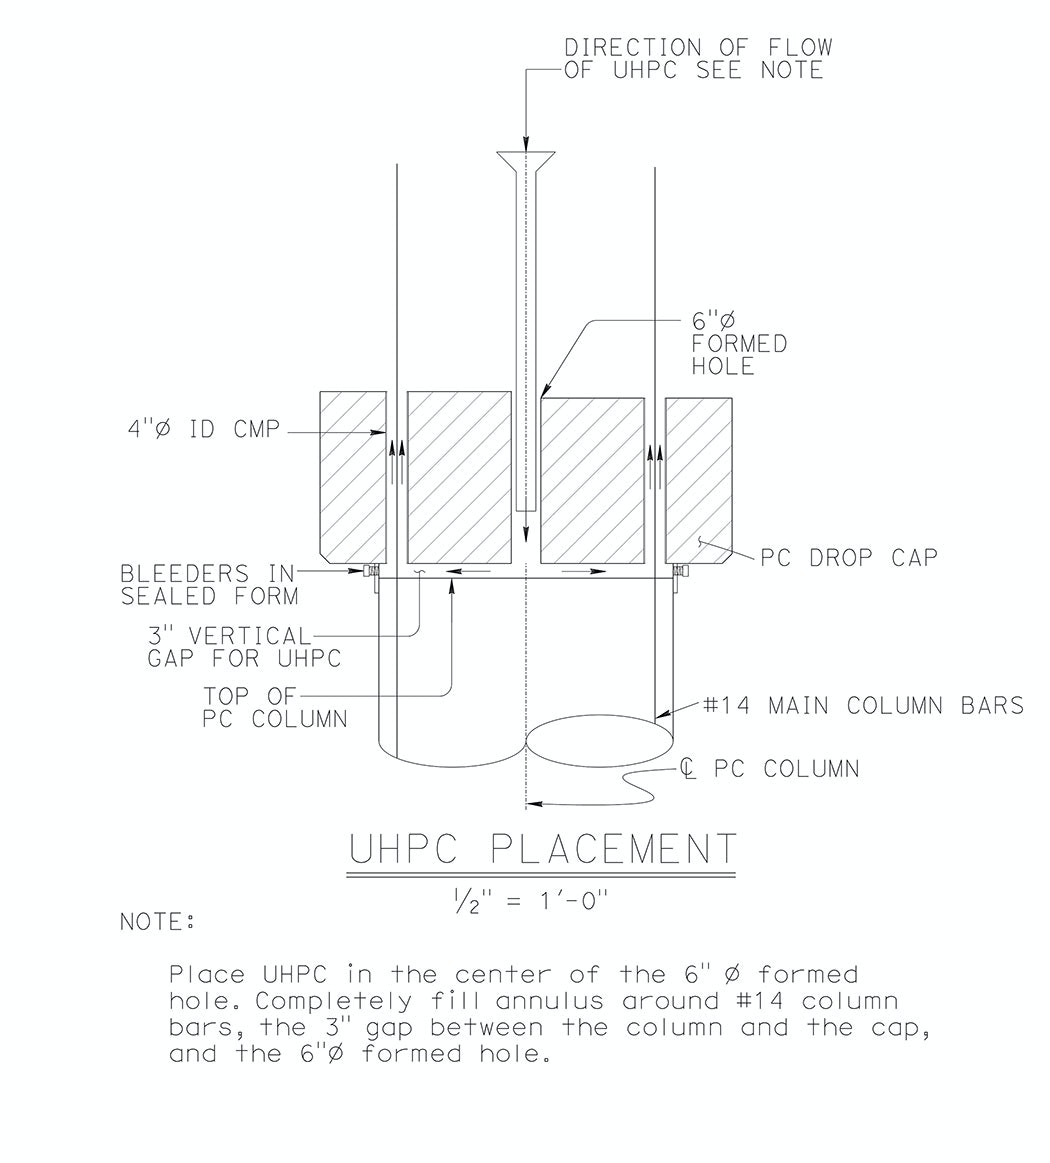 UHPC placement diagram